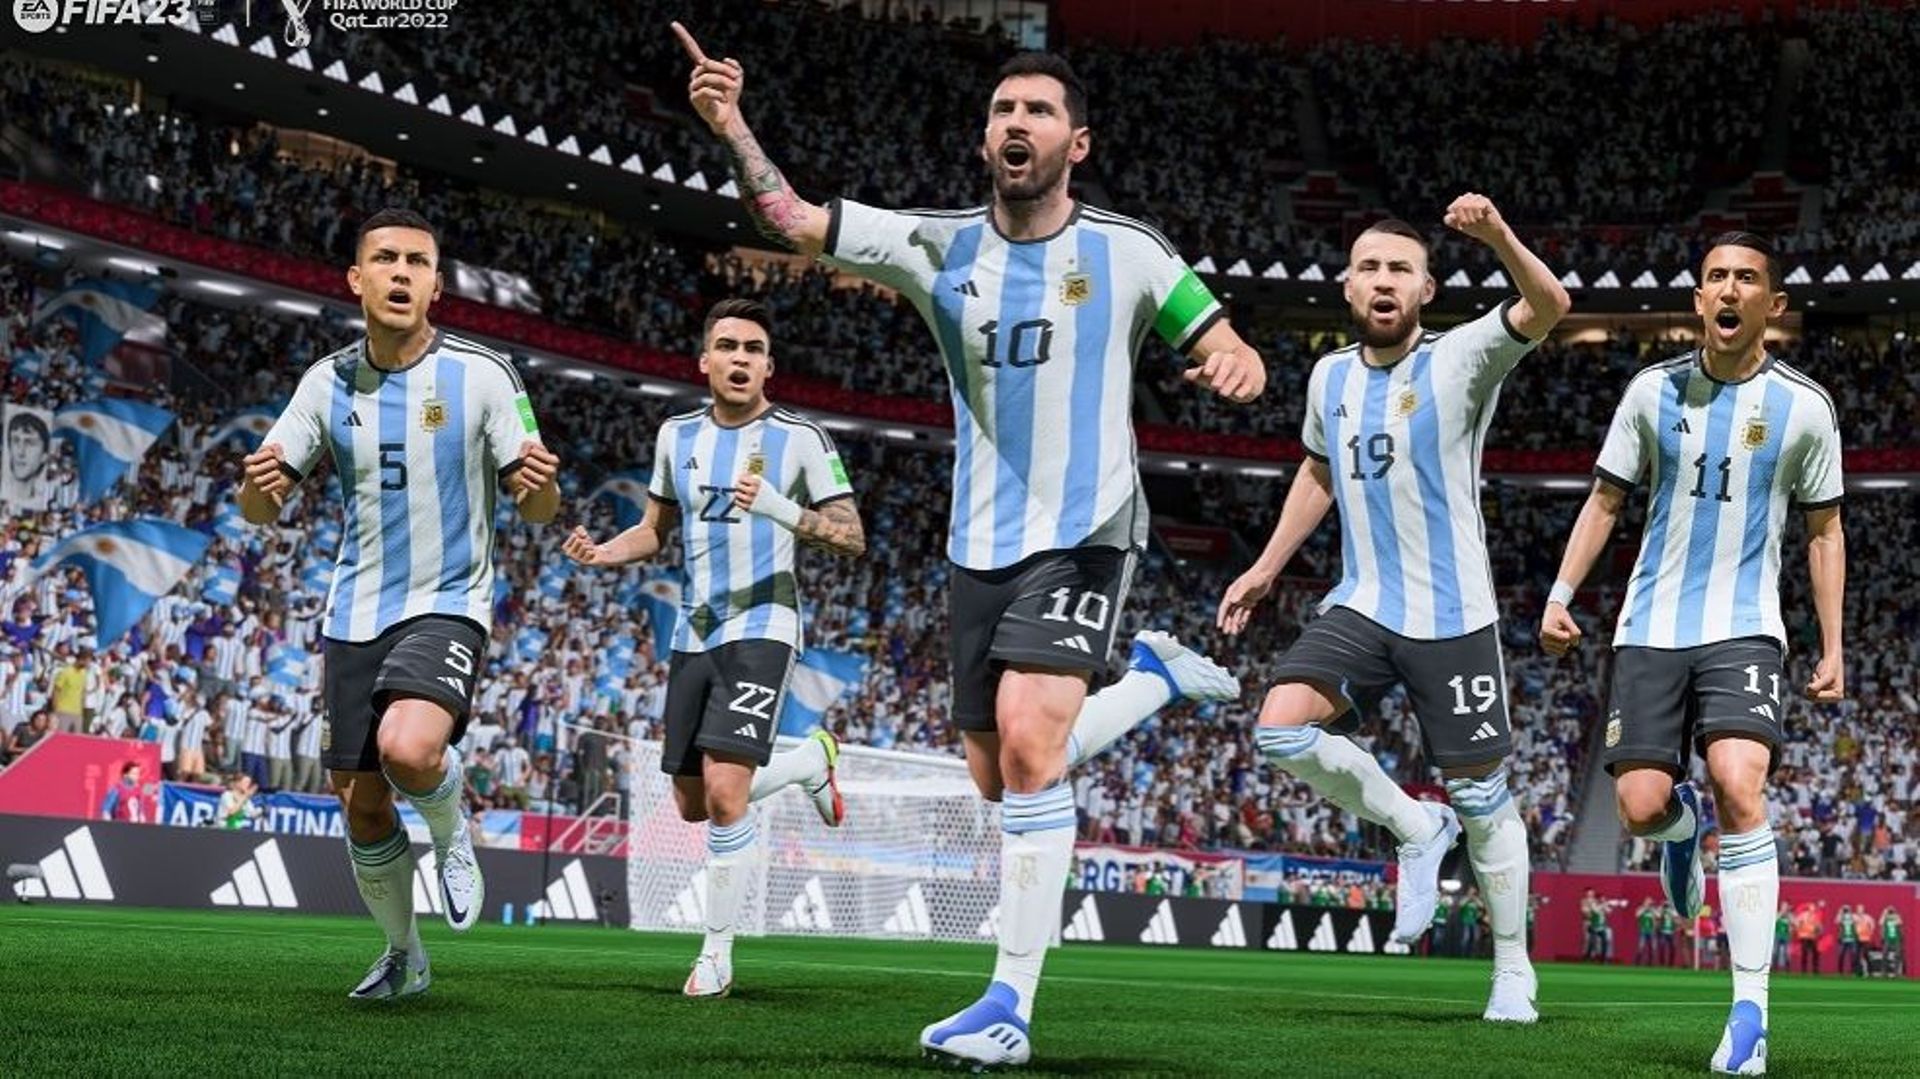 Football – Coupe du monde 2022 : La joie de Lionel Messi et des Argentins dans FIFA 23. Selon une simulation du célèbre jeu vidéo, les Argentins vont remporter le Mondial au Qatar. Les Belges, eux, seraient éliminés par l’Allemagne en 1/8e.